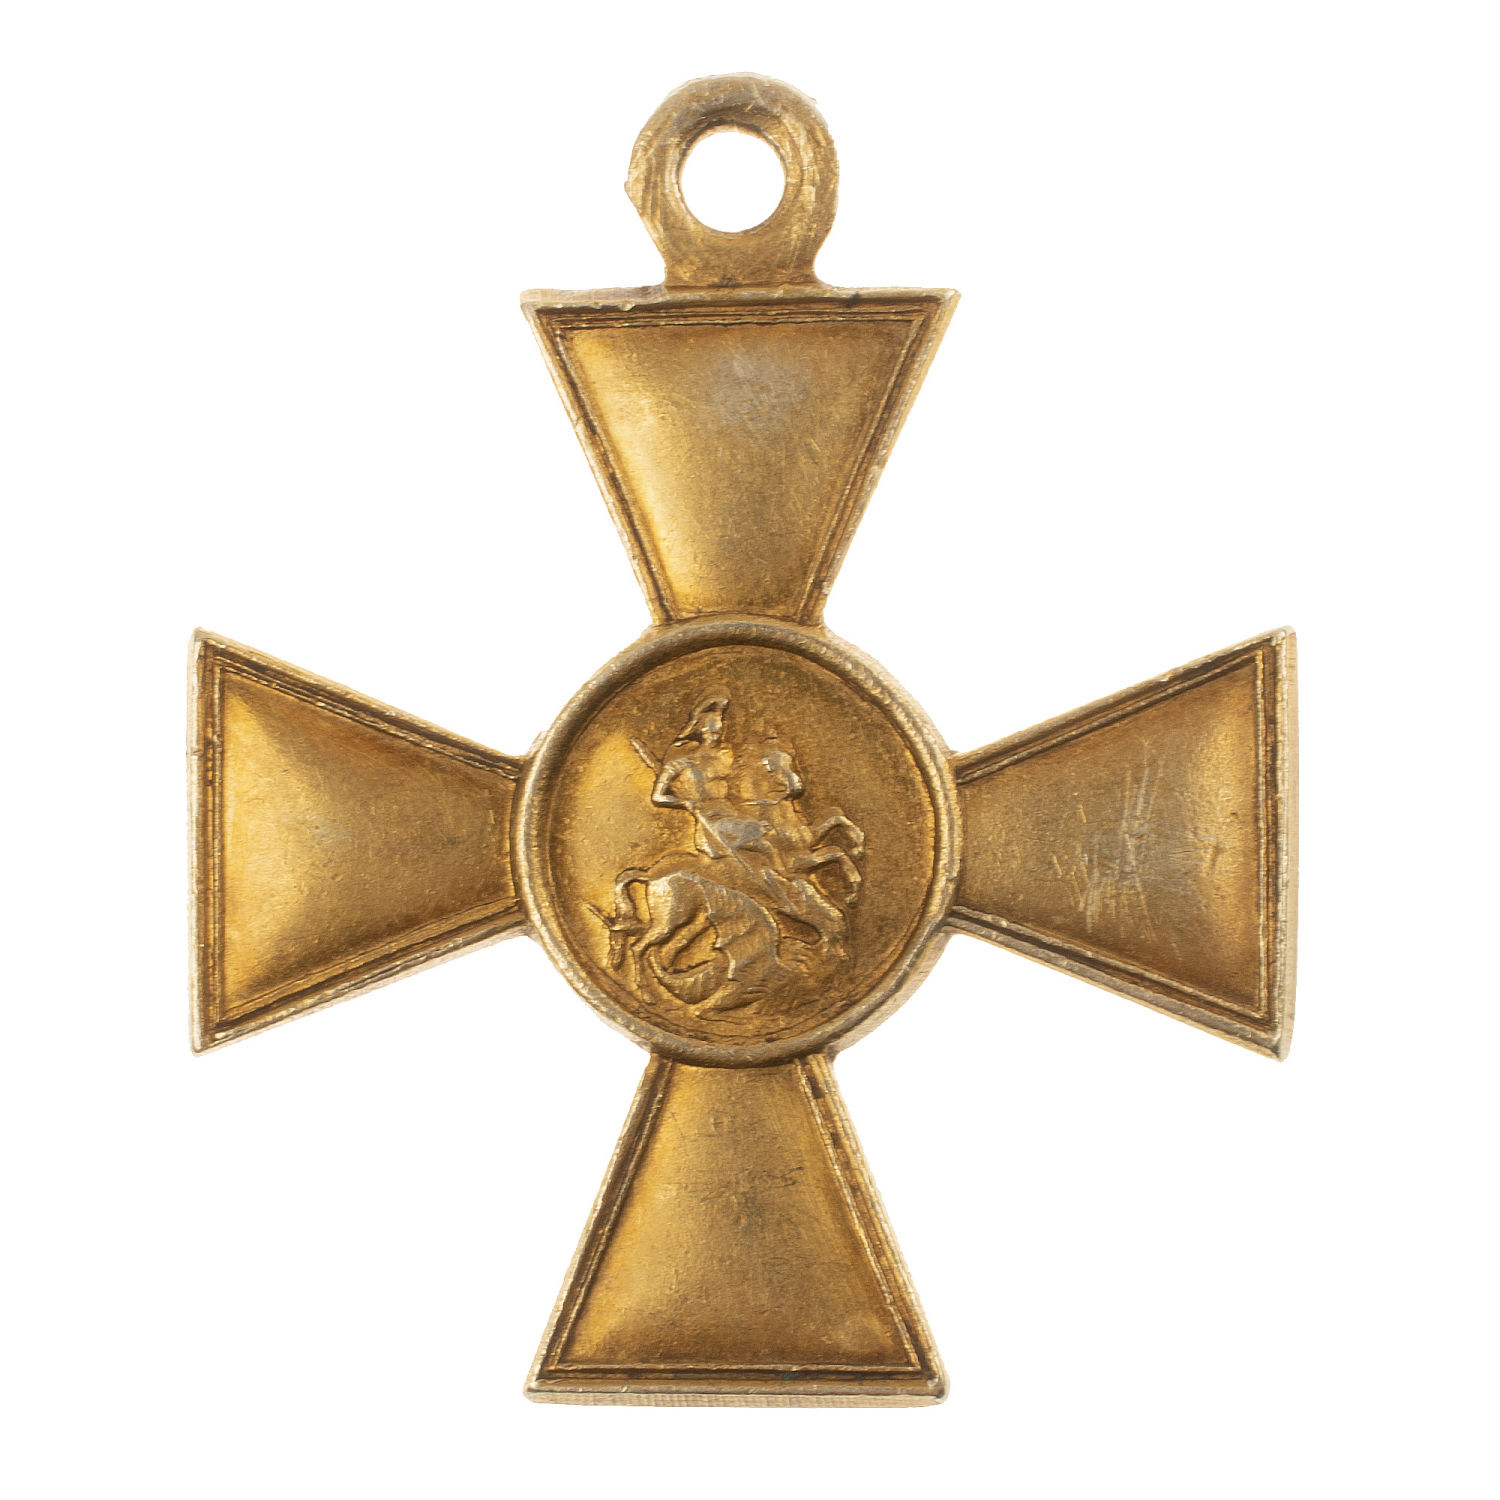 Георгиевский Крест 2 ст № 24.826. (293 пехотный Ижорский полк).